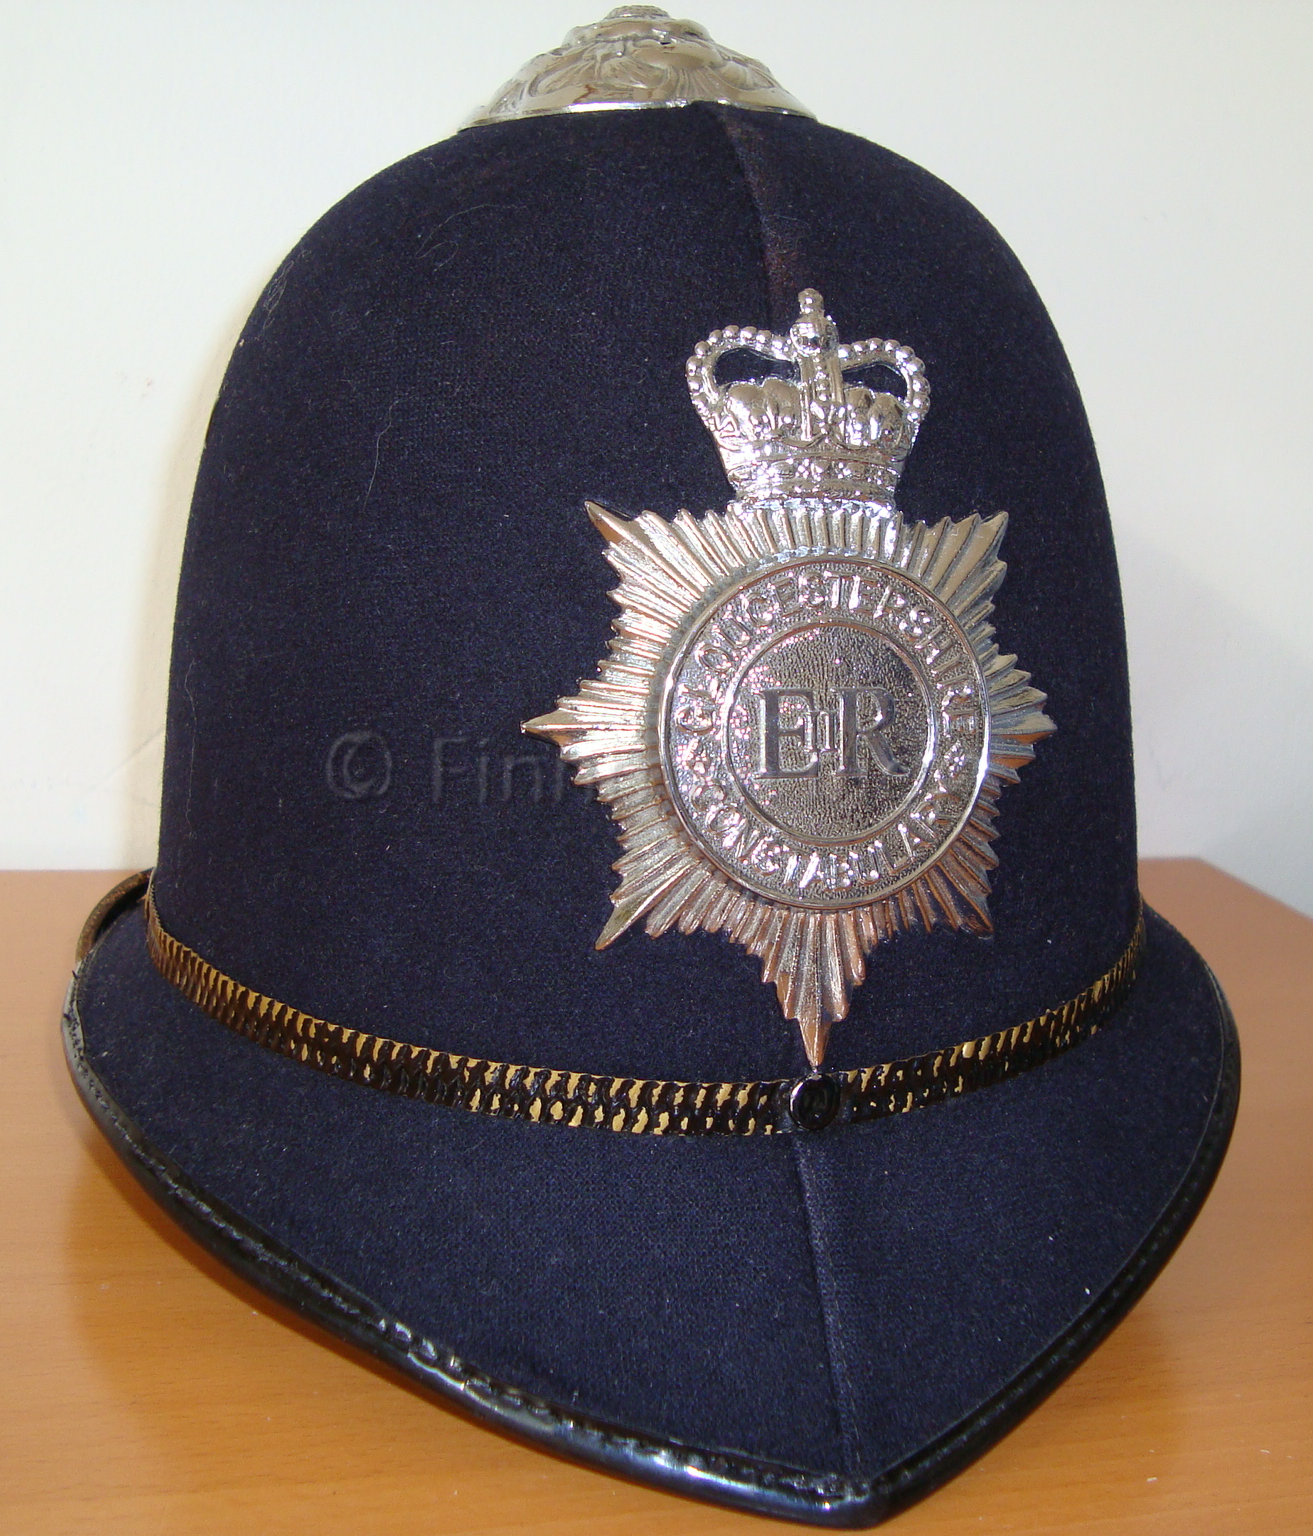 Avon & Somerset Constabulary: Police Helmet Design & Variants